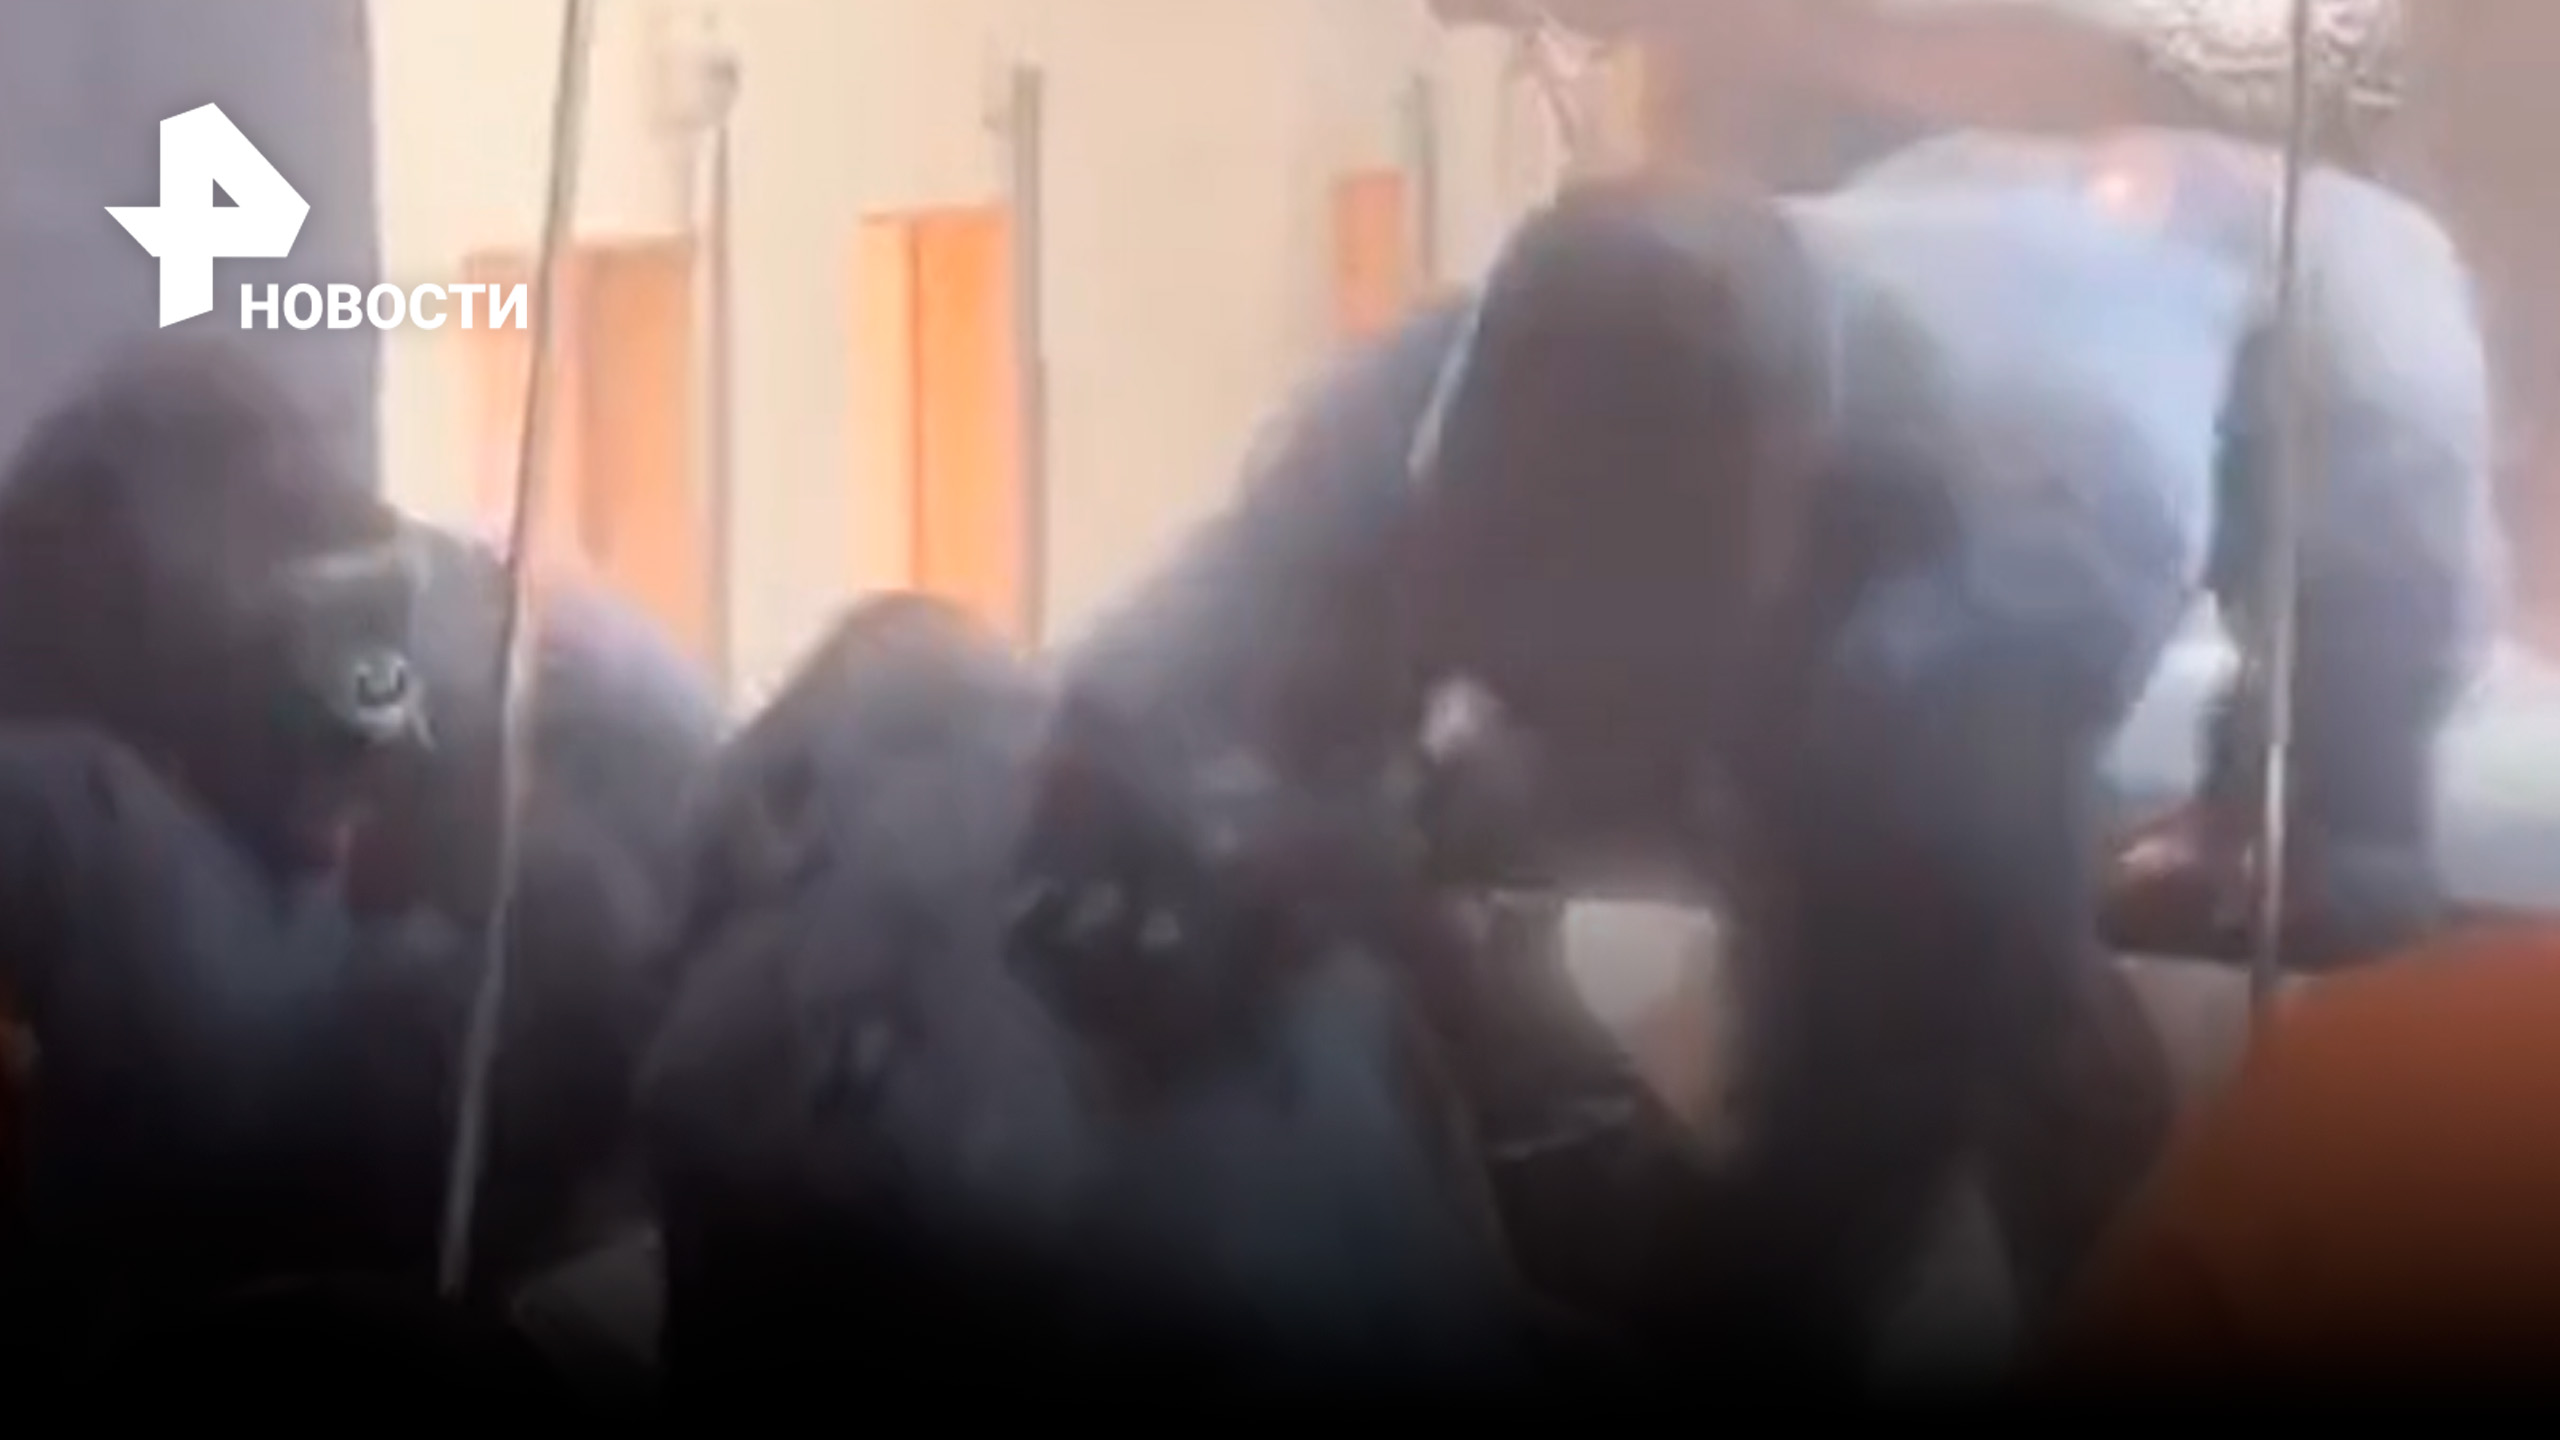 Дебош горилл в зоопарке попал на видео / РЕН Новости